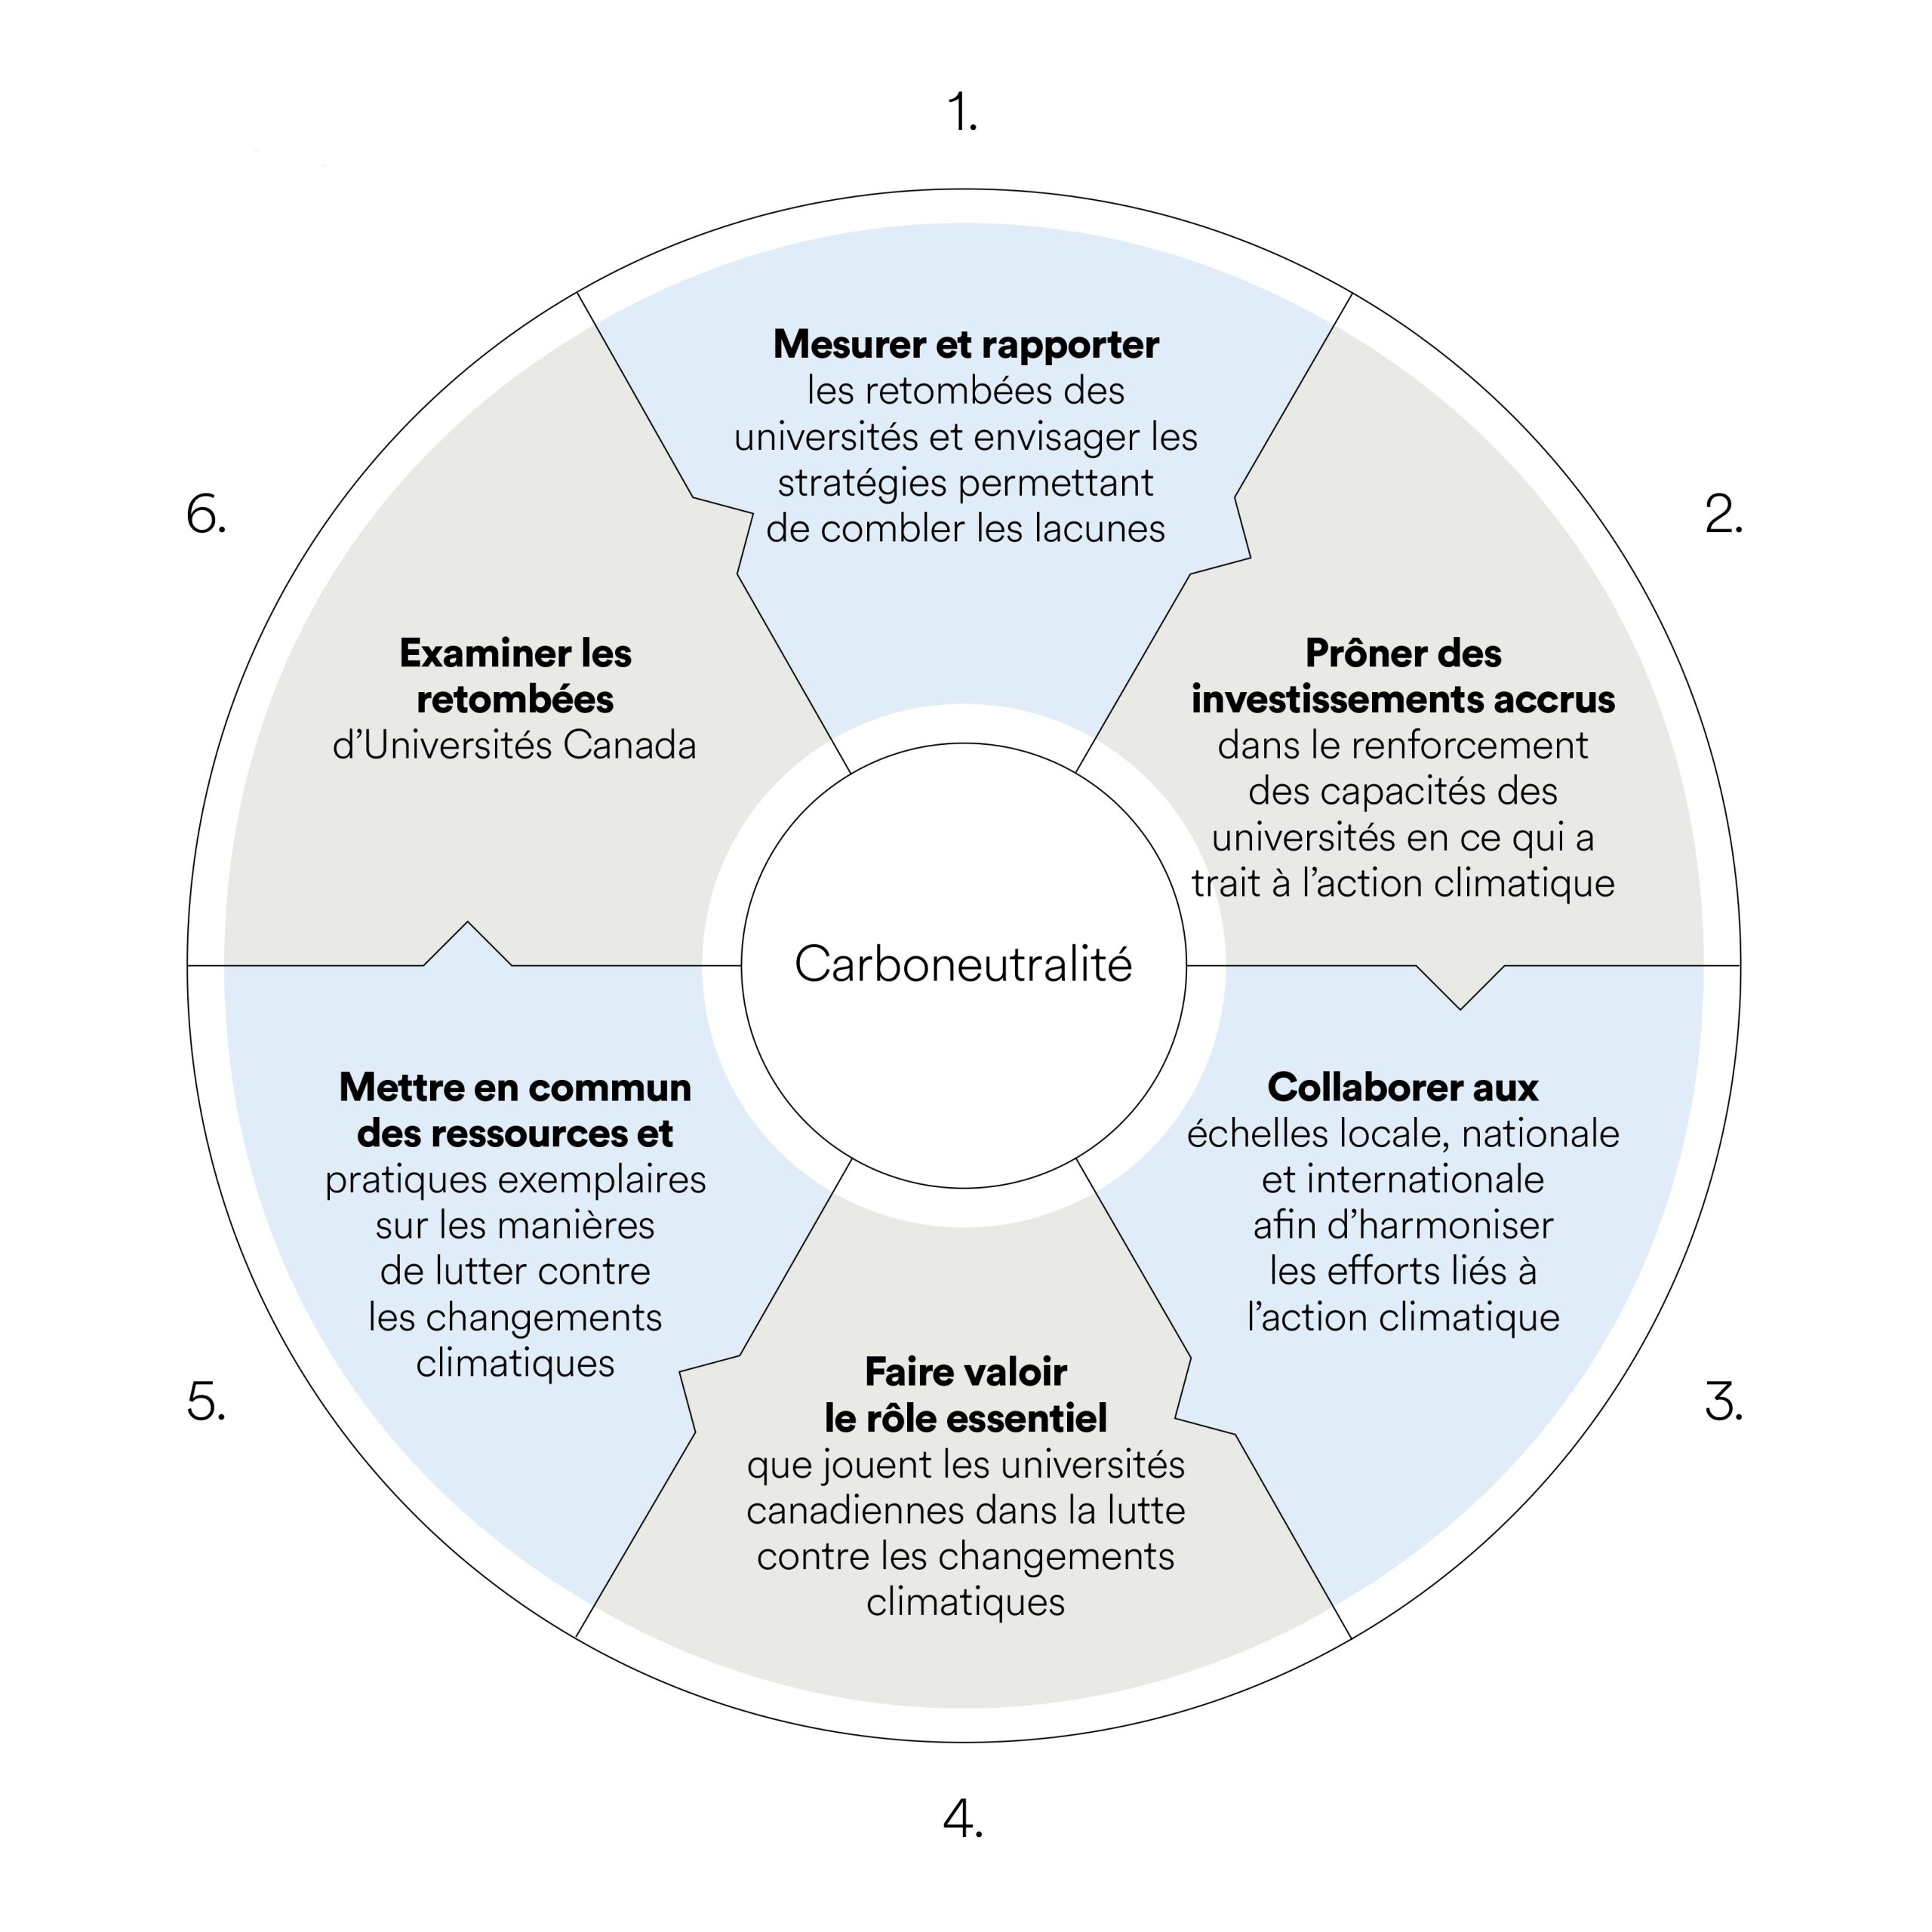 Les six objectifs : mesurer et rapporter, prôner des investissements accrus, collaborer, faire valoir le rôle essentiel, mettre en commun des ressources et examiner les retombées